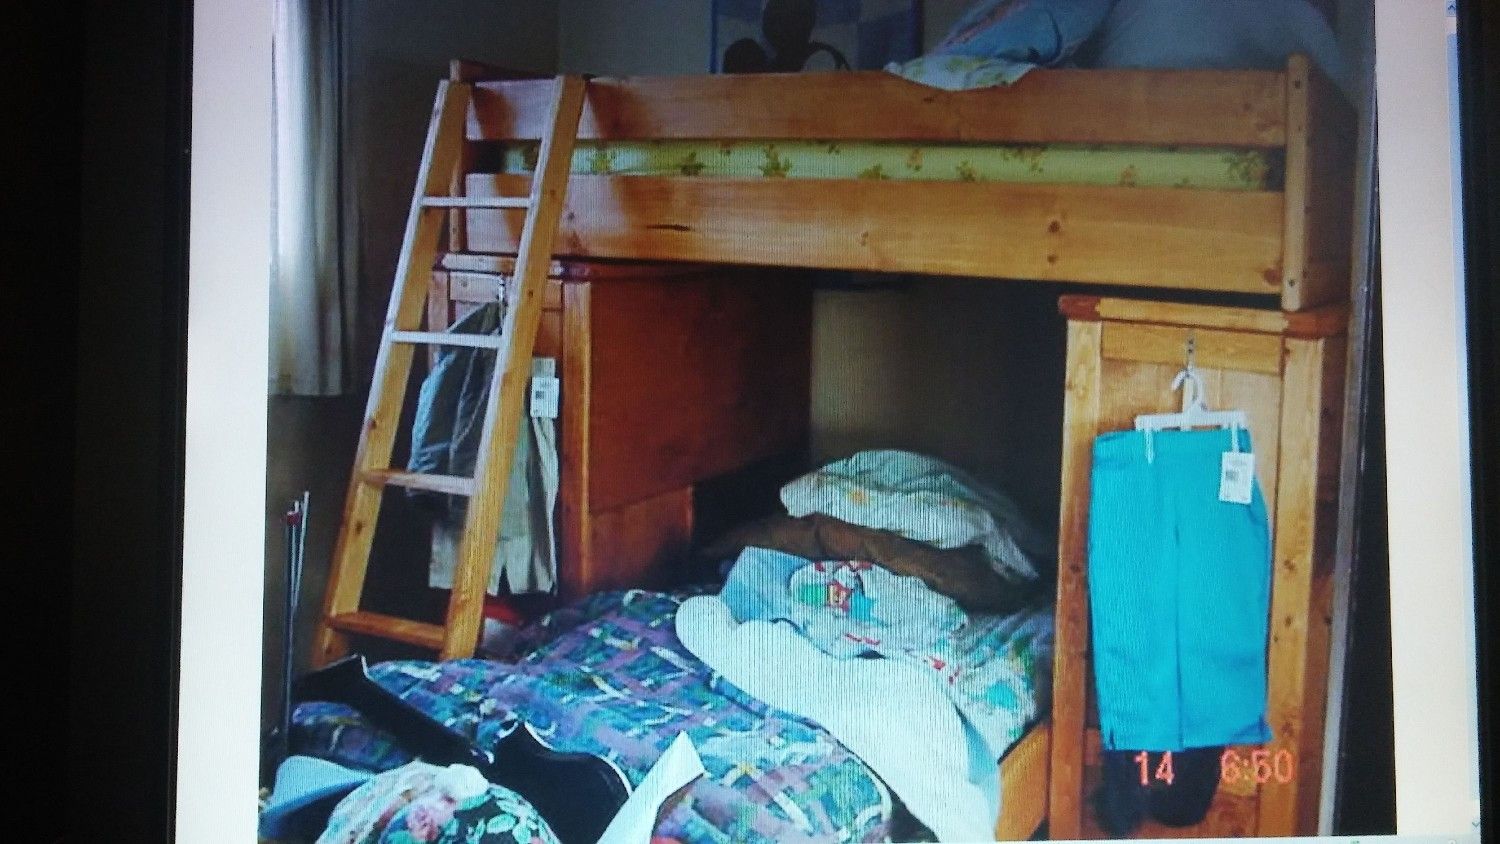 Childs Bunk(2) bed 2 desks & ladder